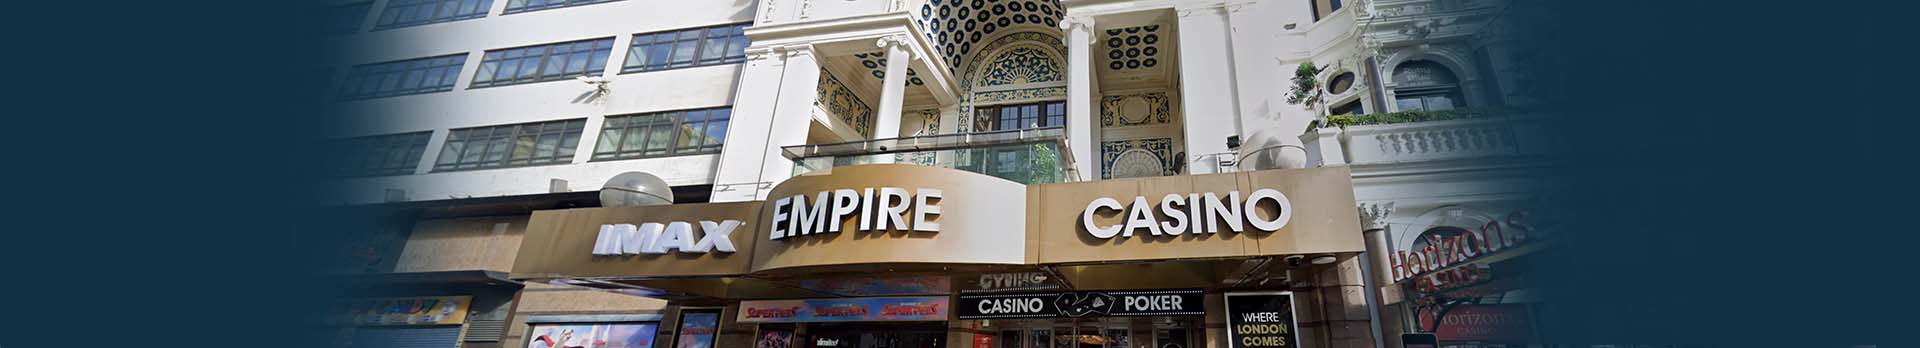 Casino at the Empire